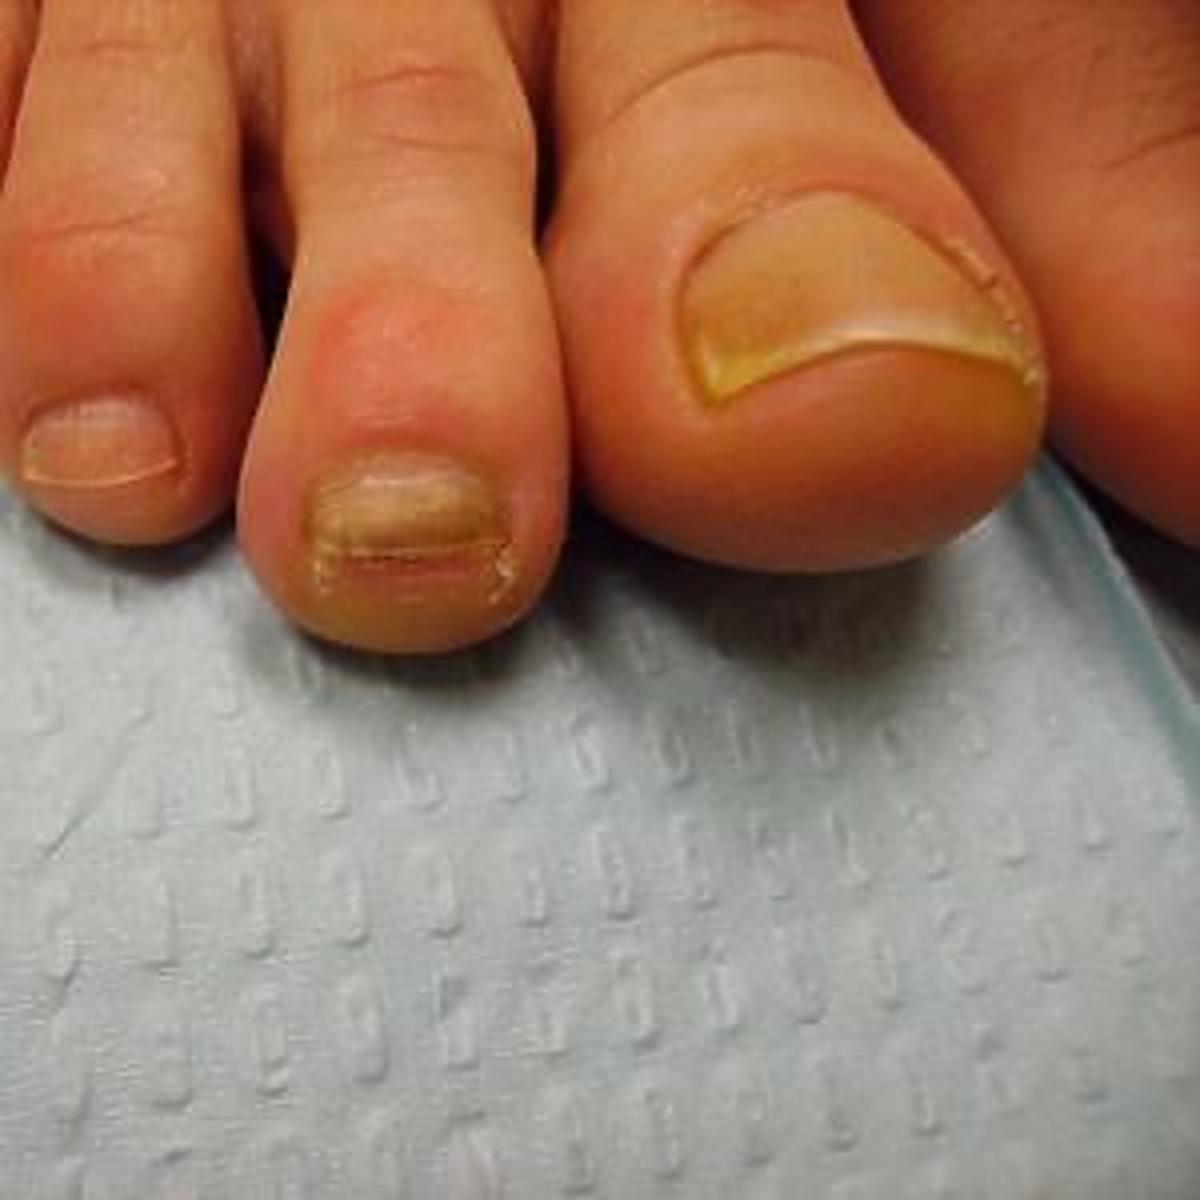 pozolke paznokcie u stop powstrzymuja cie przed noszeniem sandalkow znamy domowy patent na ten problem christmas nails pink nail art new design